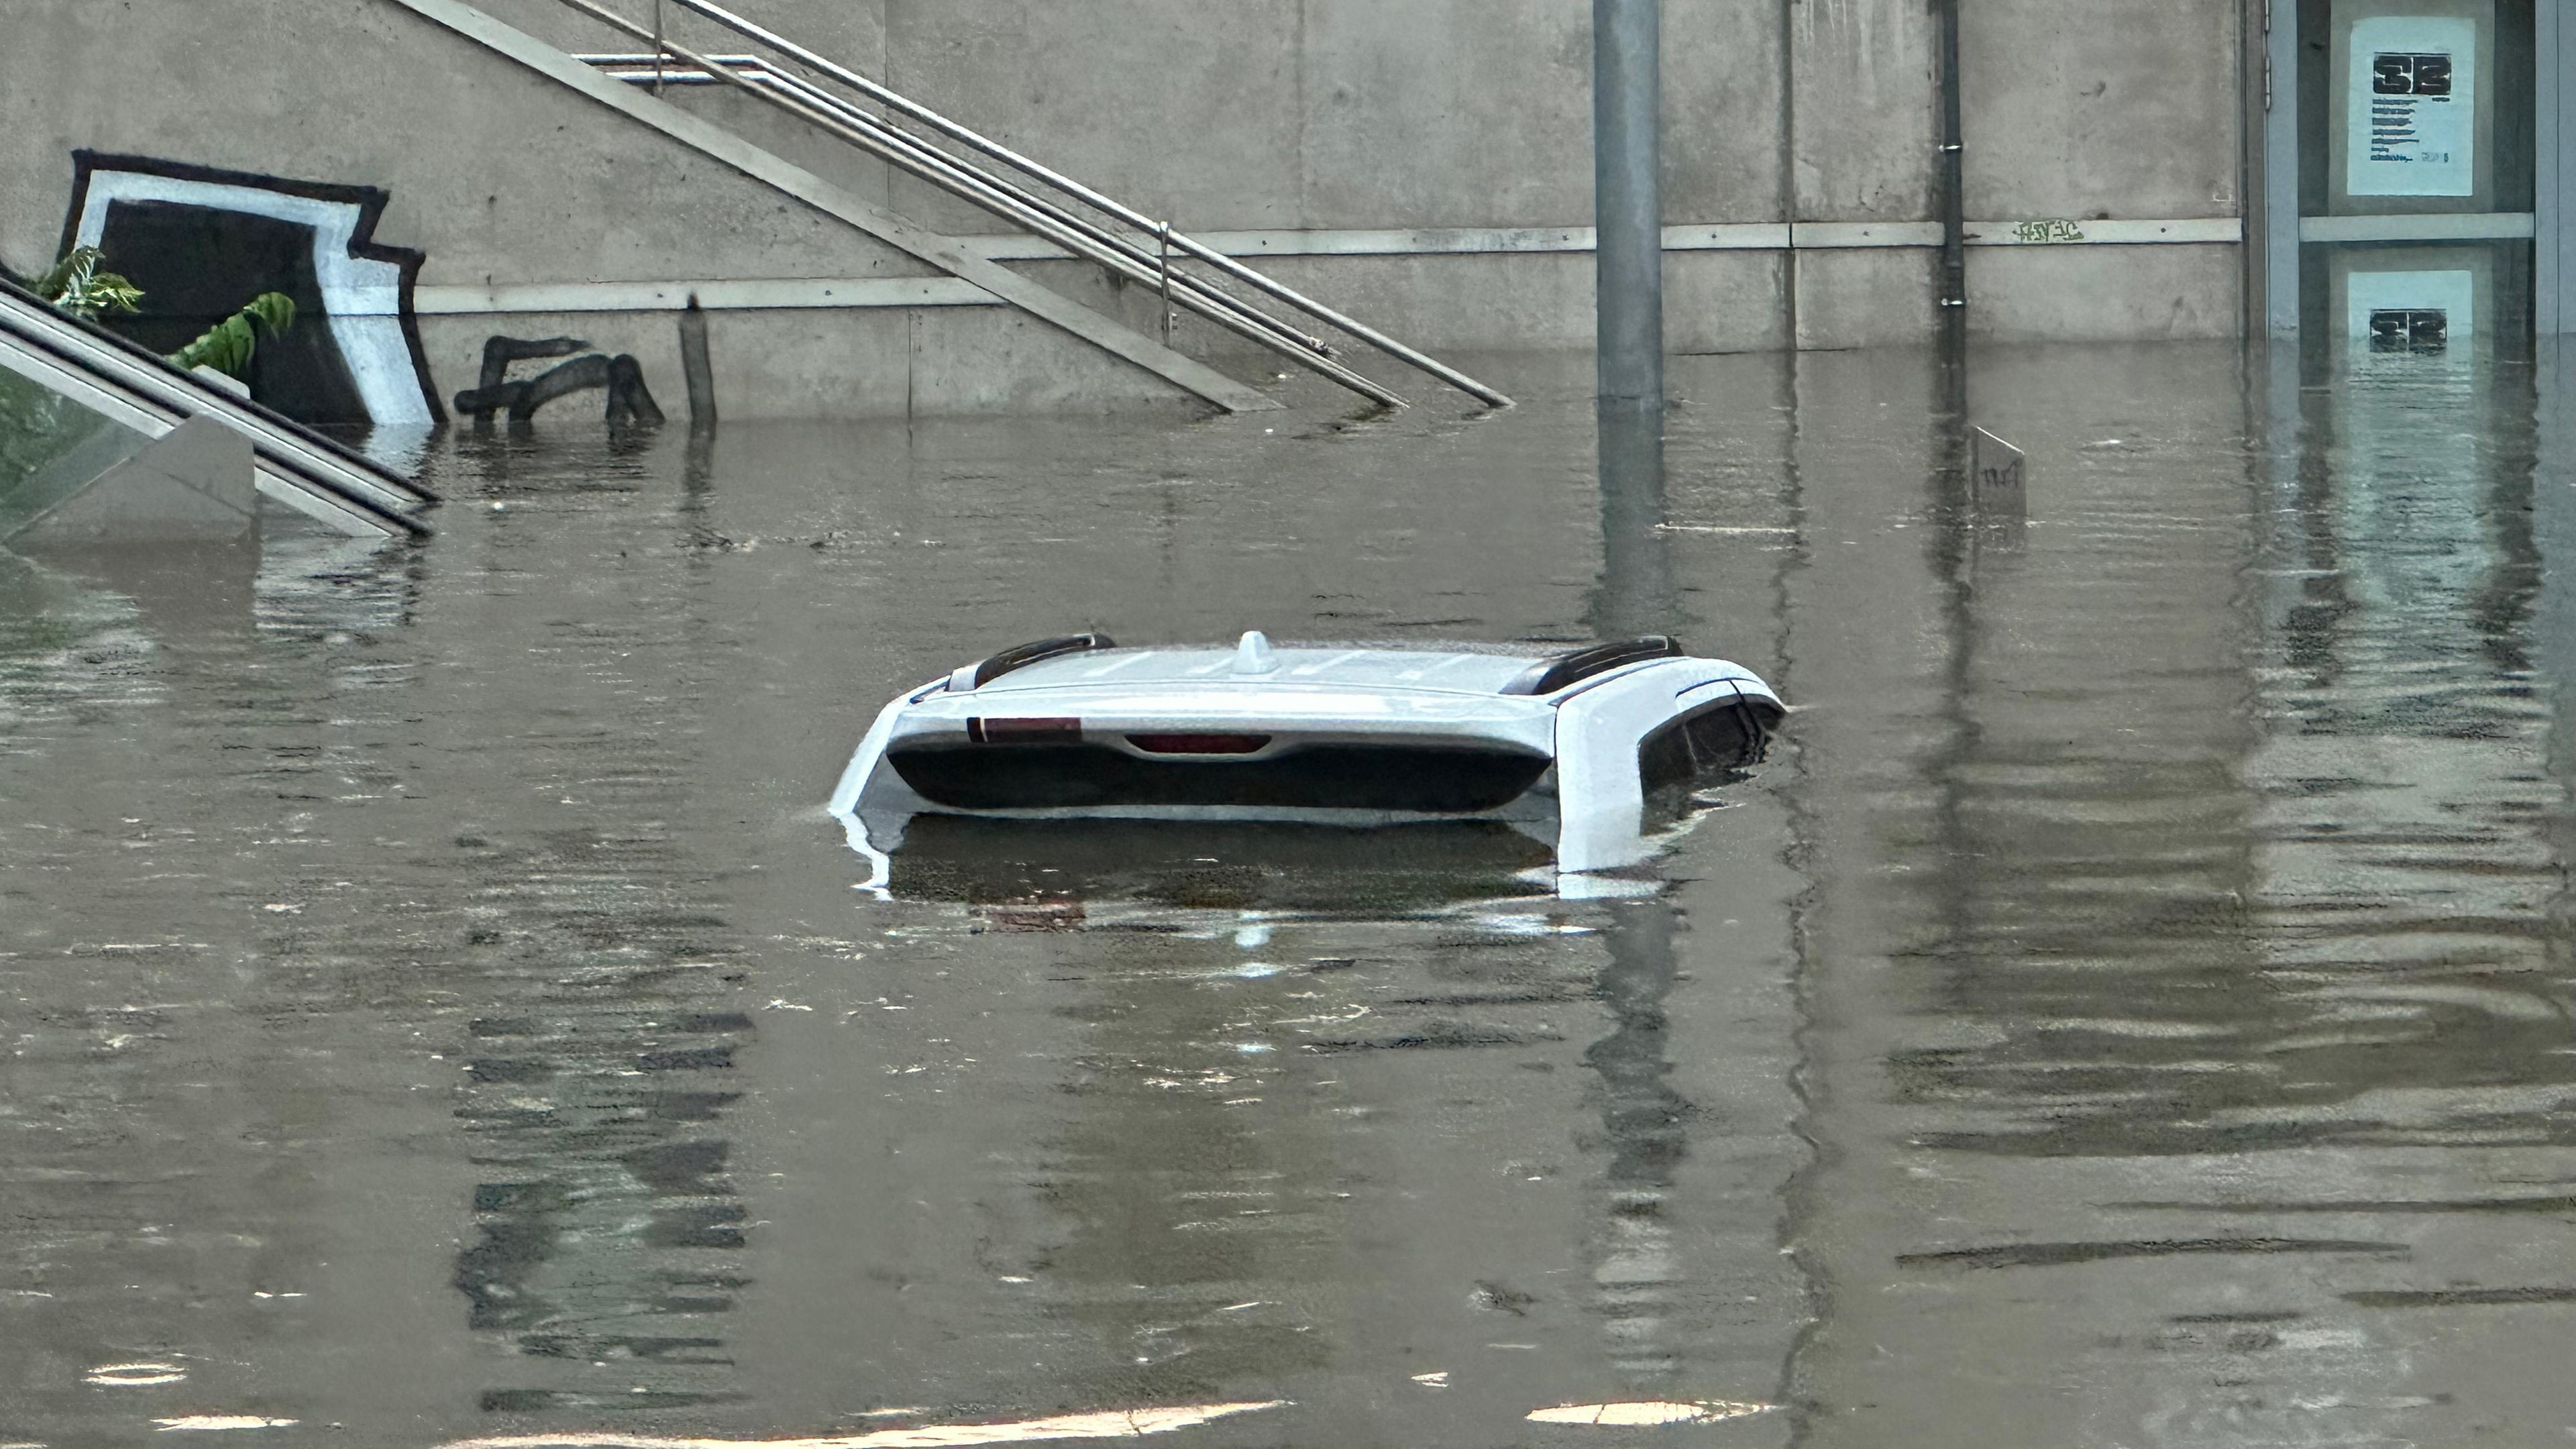  Ein Auto, von dem man nur das Dach erkennen kann, steht in einer überschwemmten Straße an einer Unterführung nach Unwetter in Nürnberg